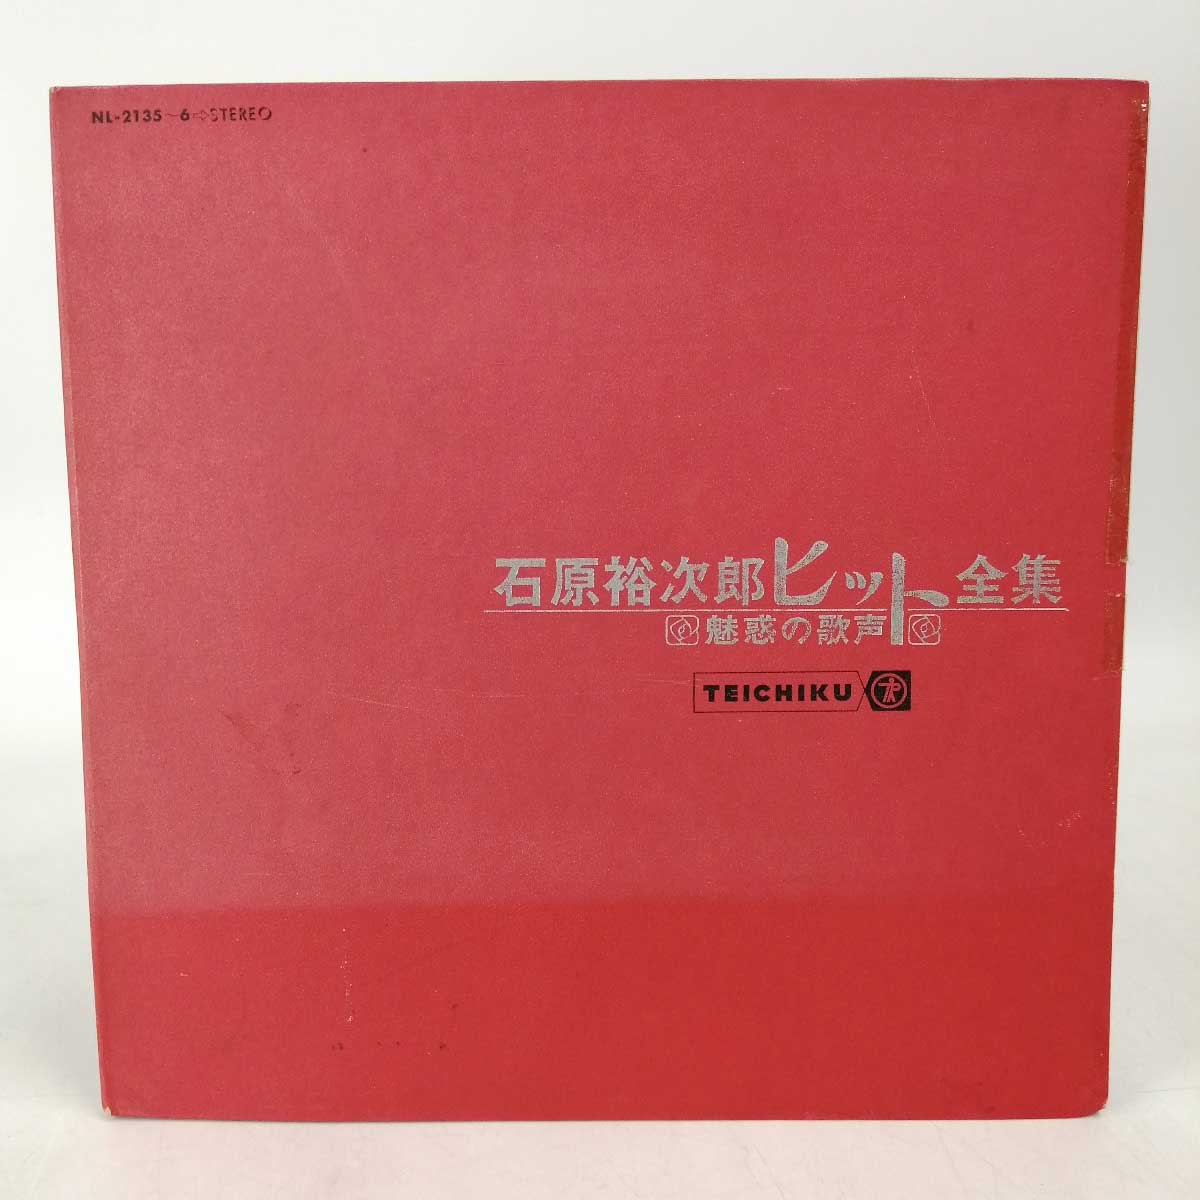 【中古】LP 石原裕次郎 ヒット全集 NL-2135-6 レコード